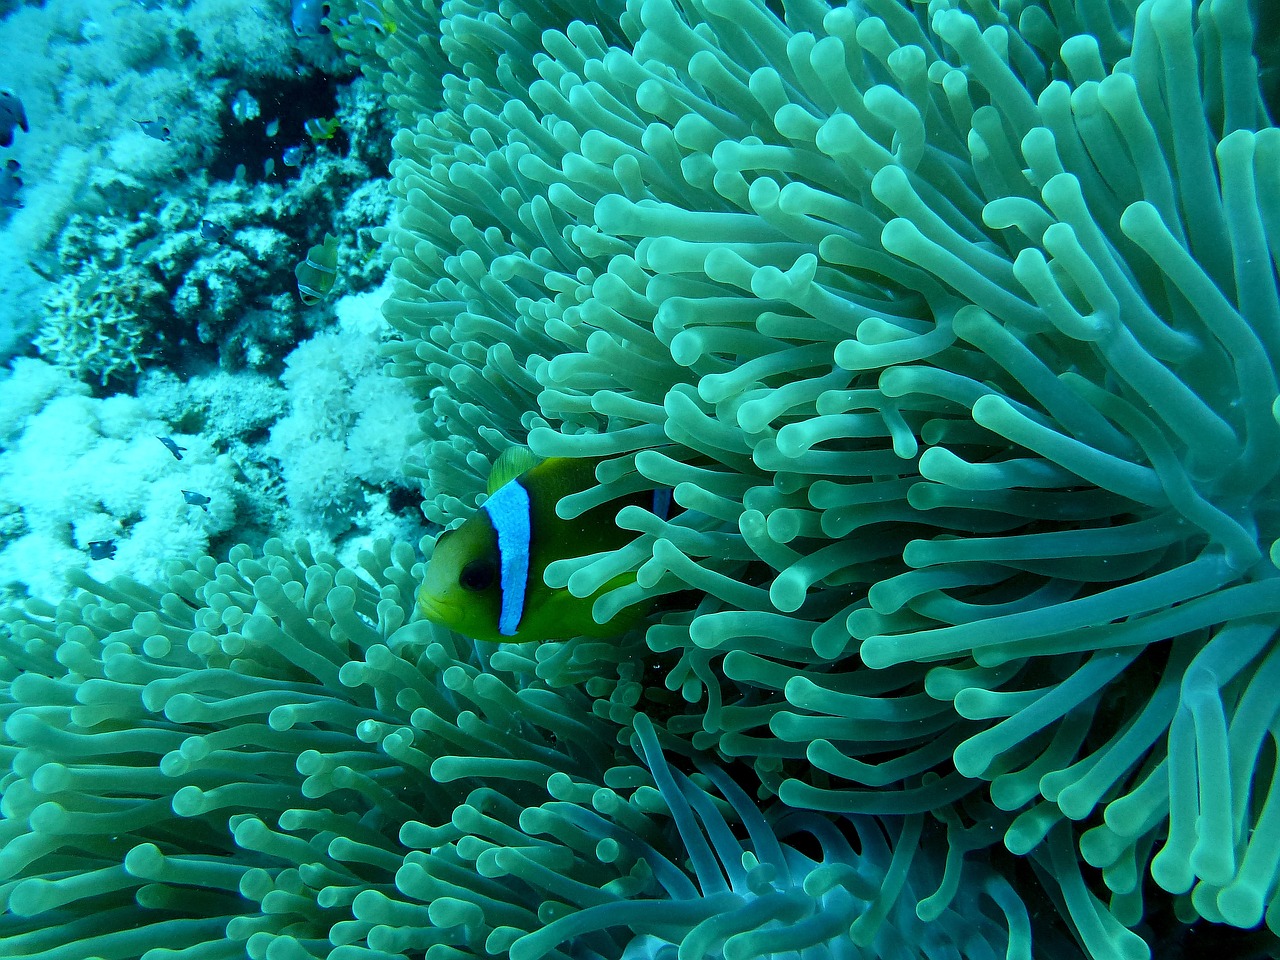 anemone fish nemo underwater world free photo